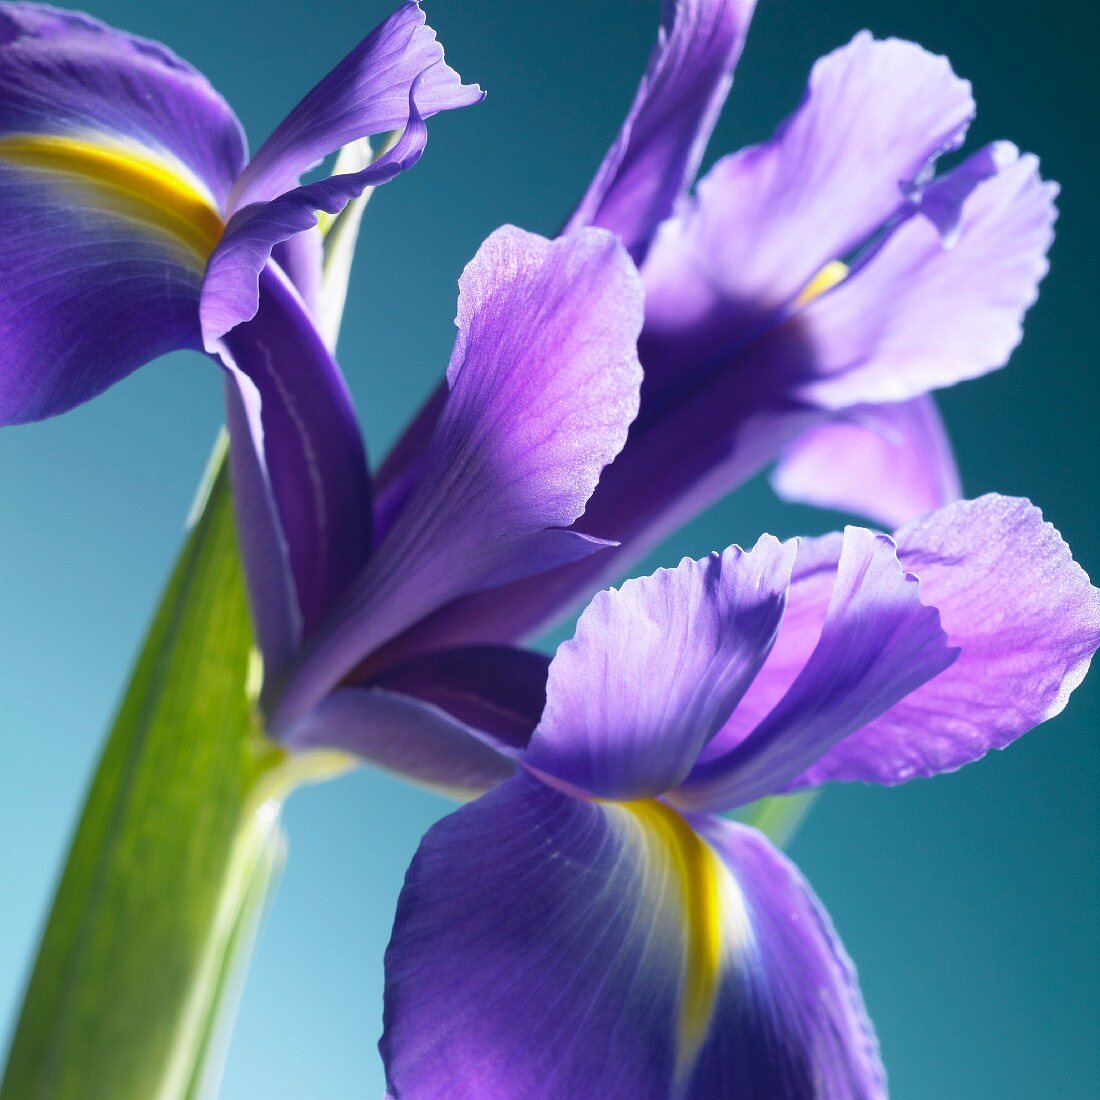 An iris flower